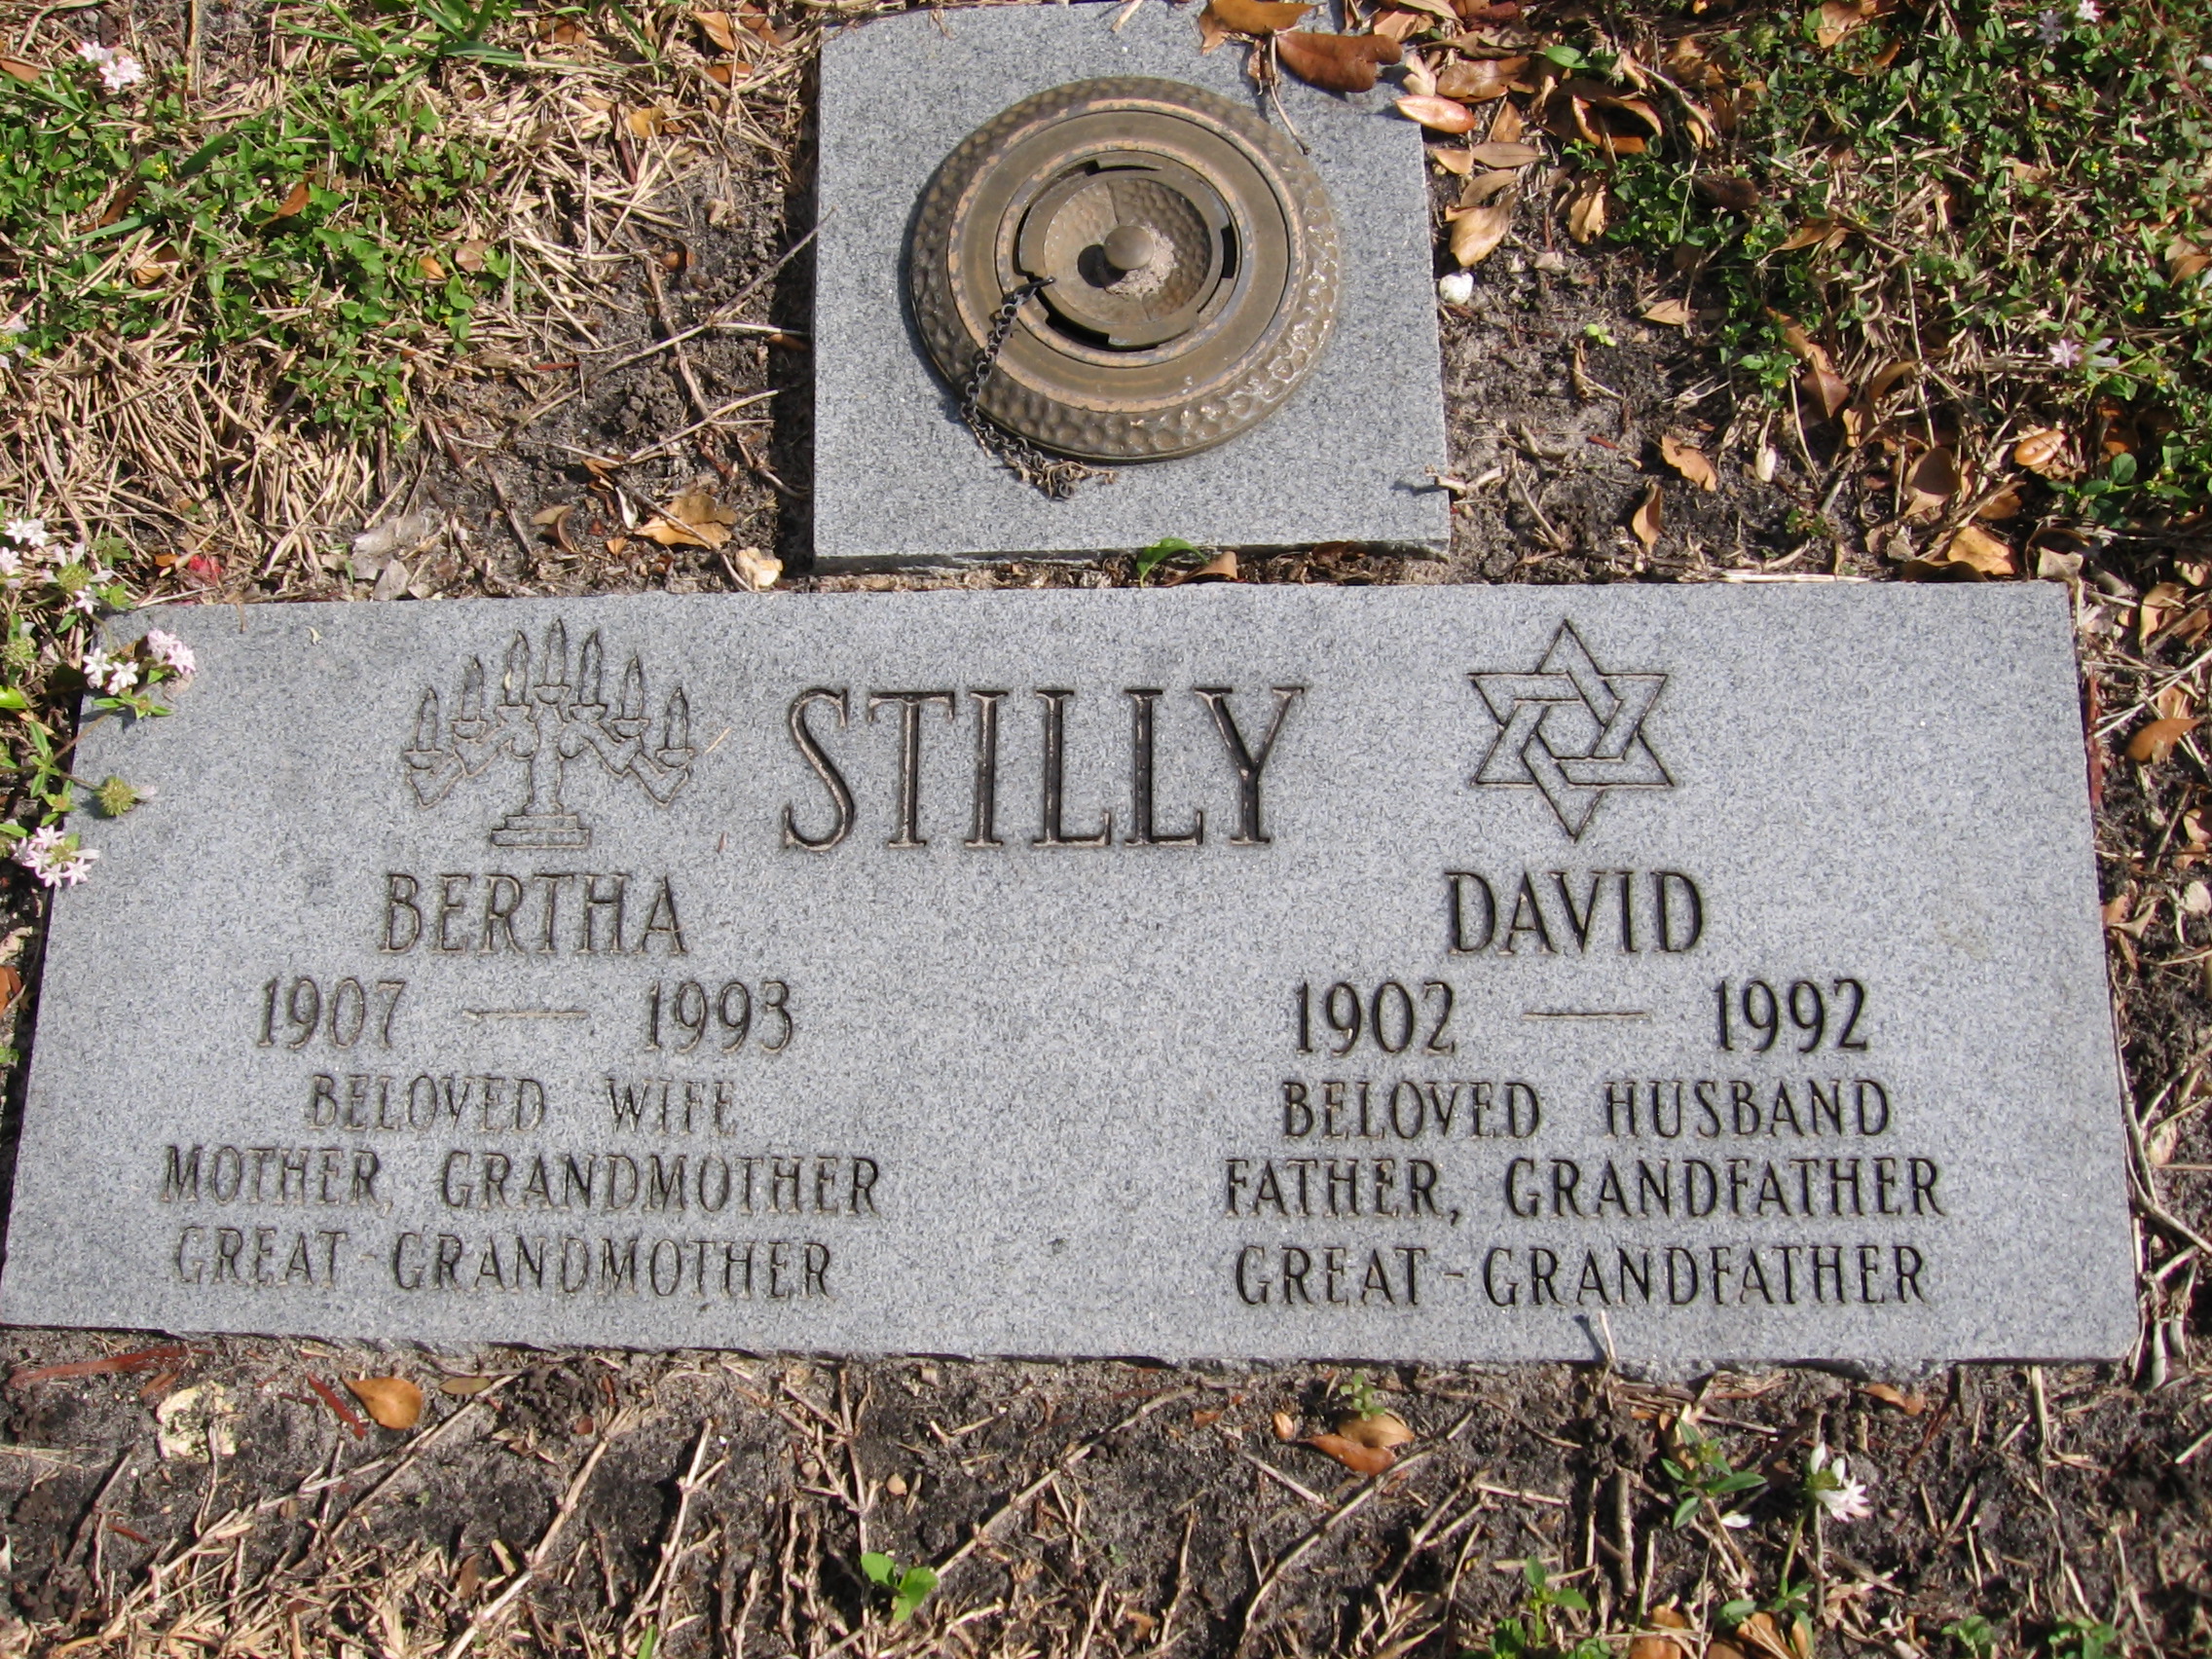 Bertha Stilly